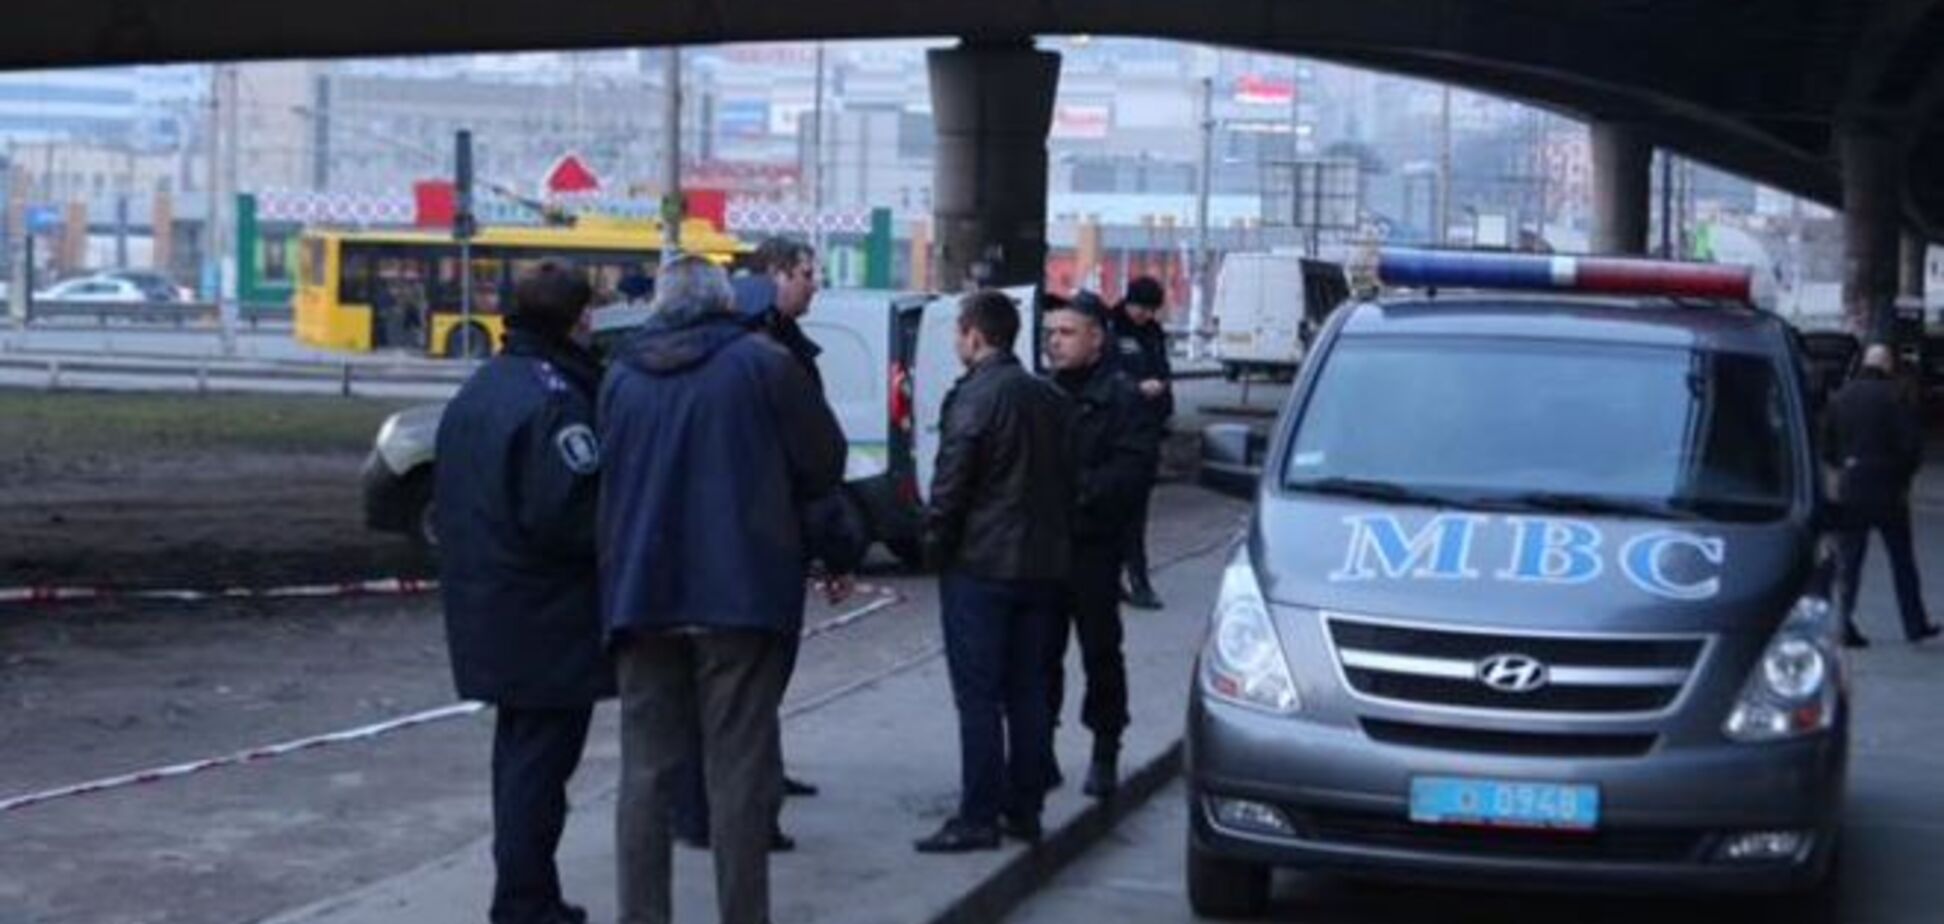 Возле автовокзала в Киеве обнаружили подозрительный предмет: опубликованы фото